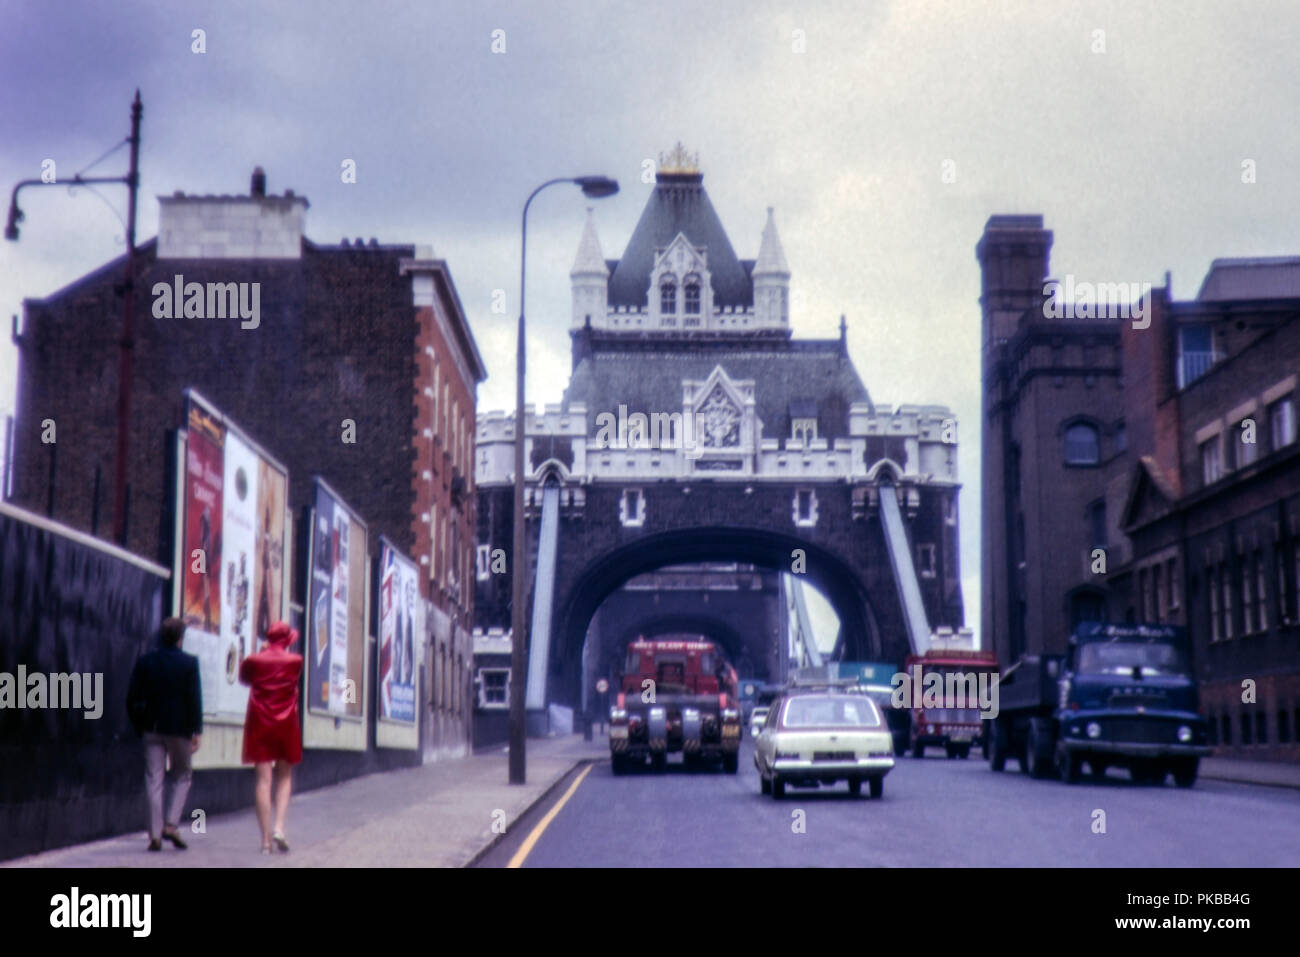 Immagine del Tower Bridge, London. Preso dal lato sud nel luglio 1970 con il vecchio spot pubblicitari e i veicoli d'epoca. Foto Stock